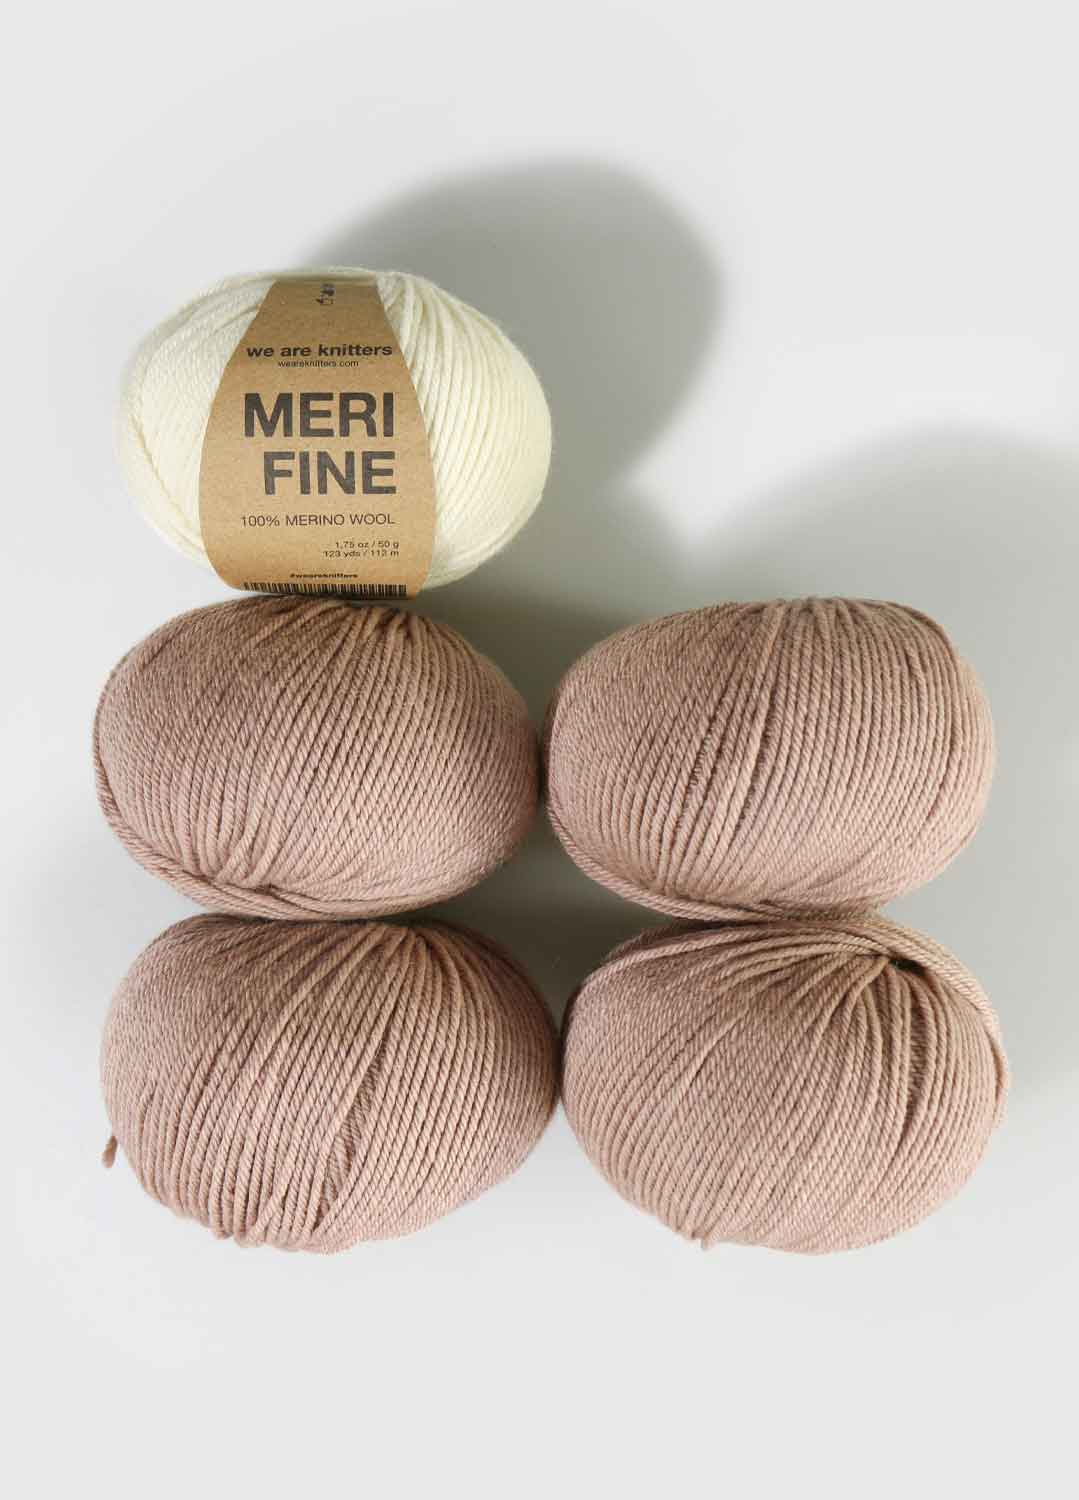 5 Pack of Merifine Yarn Balls